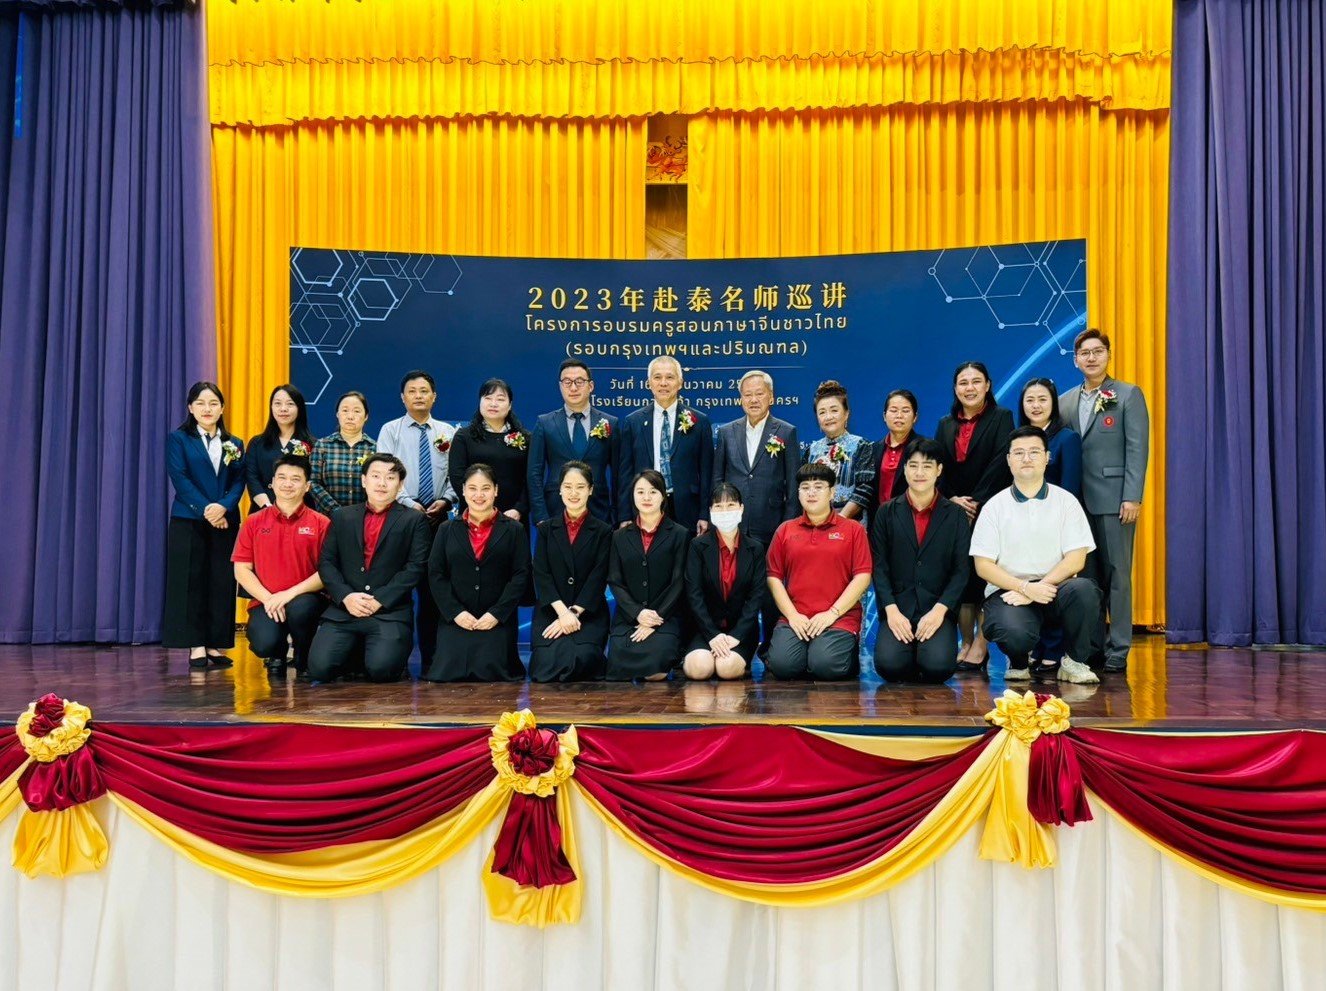 โครงการอบรมครูสอนภาษาจีนชาวไทย สังกัดสำนักงานคณะกรรมการส่งเสริมการศึกษาเอกชน (รอบกรุงเทพฯและปริมณฑล) ณ โรงเรียนกว่างเจ้า กรุงเทพมหานครฯ